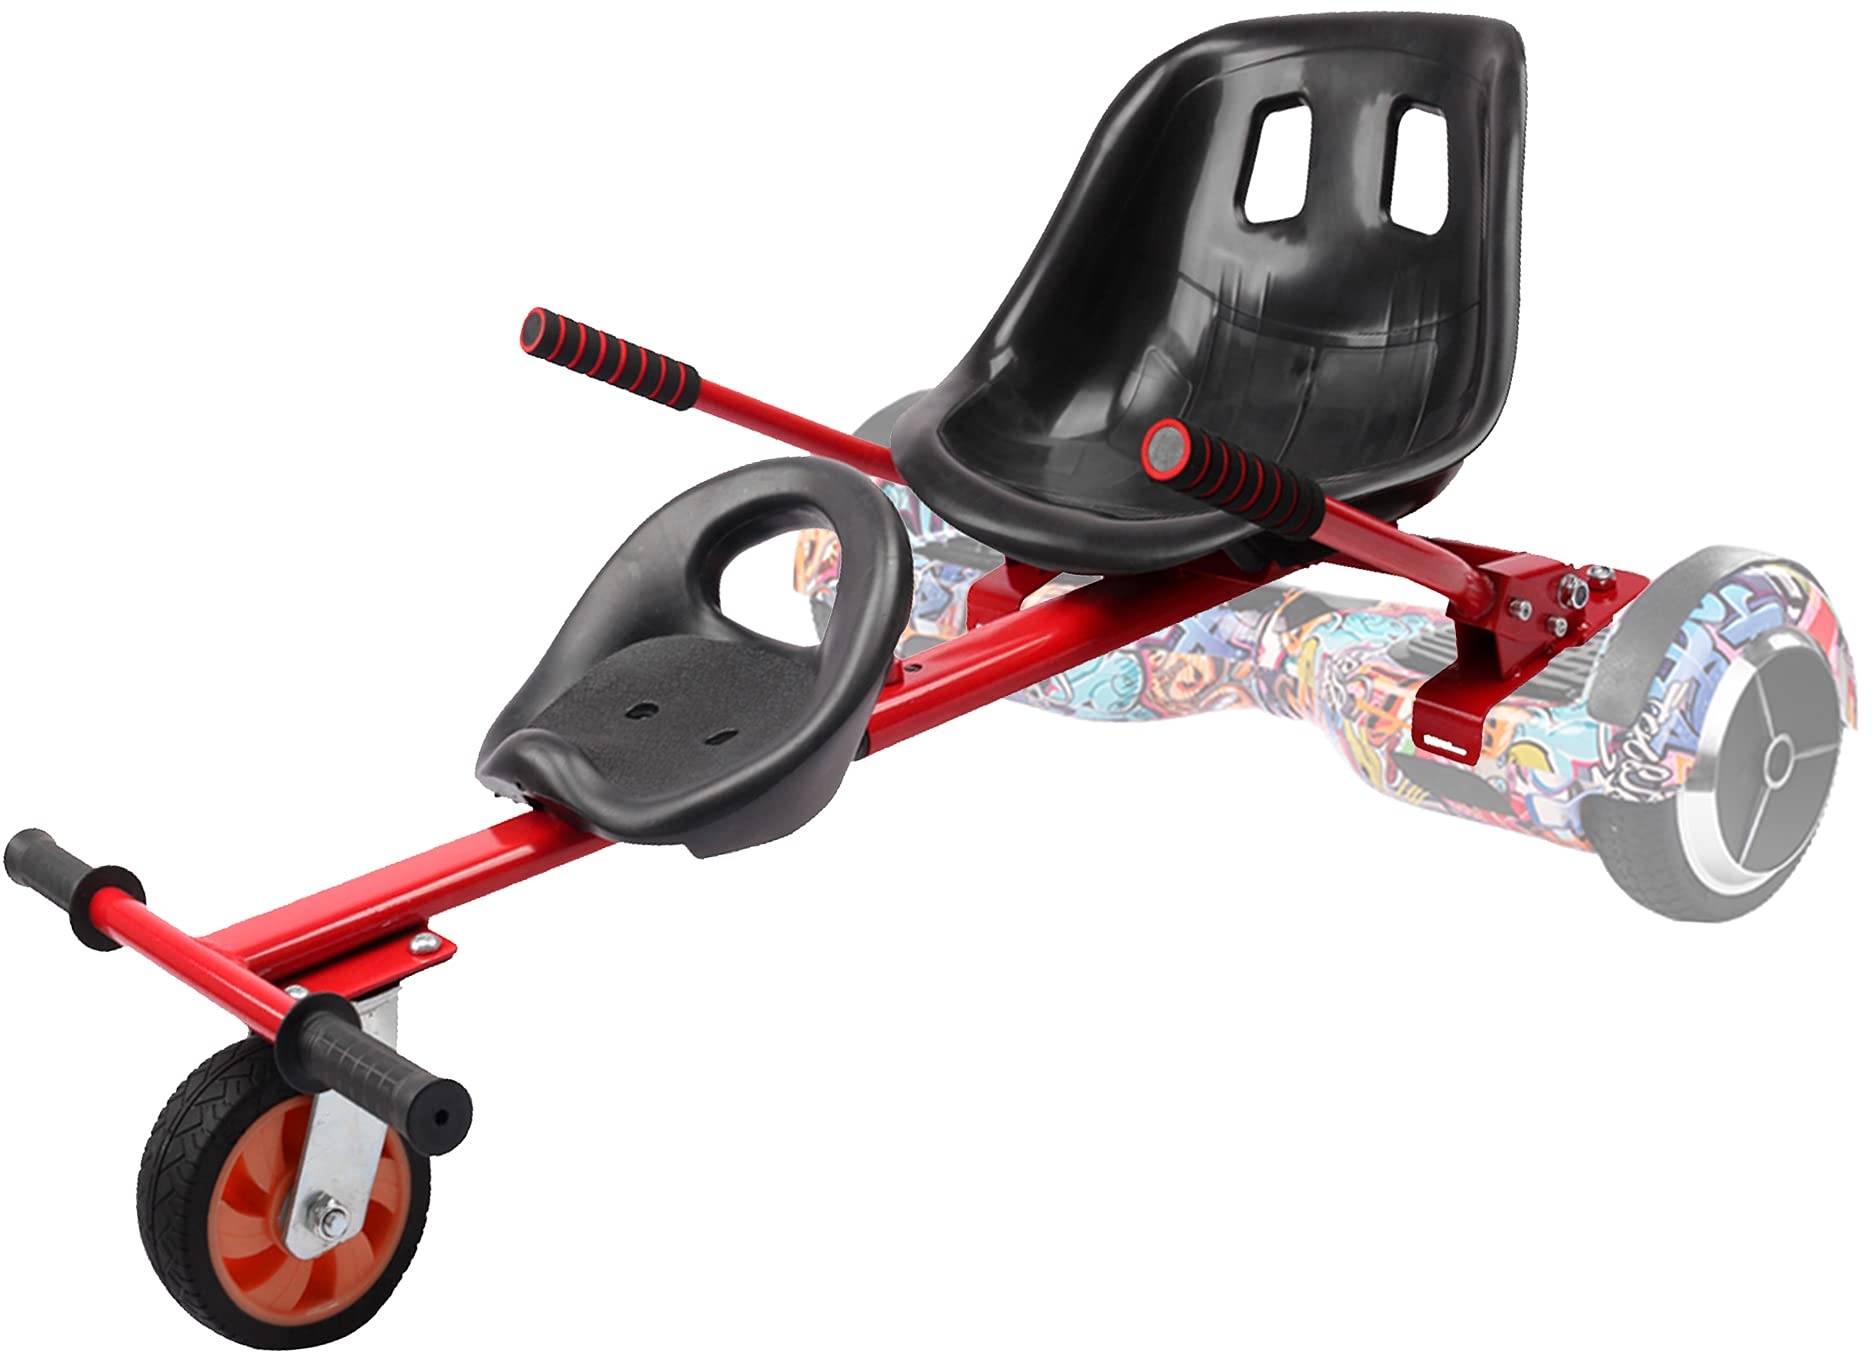 TGHY Hoverboard Sitz Hoverkart Doppelsitz Verstellbarer Rahmen Verwandeln Sie Ihren Selbstausgleichenden Scooter in Go-Kart Passen Auf 6,5" 8" und 10" Machen Das Fahren Spaß und Sicher,Rot,PU